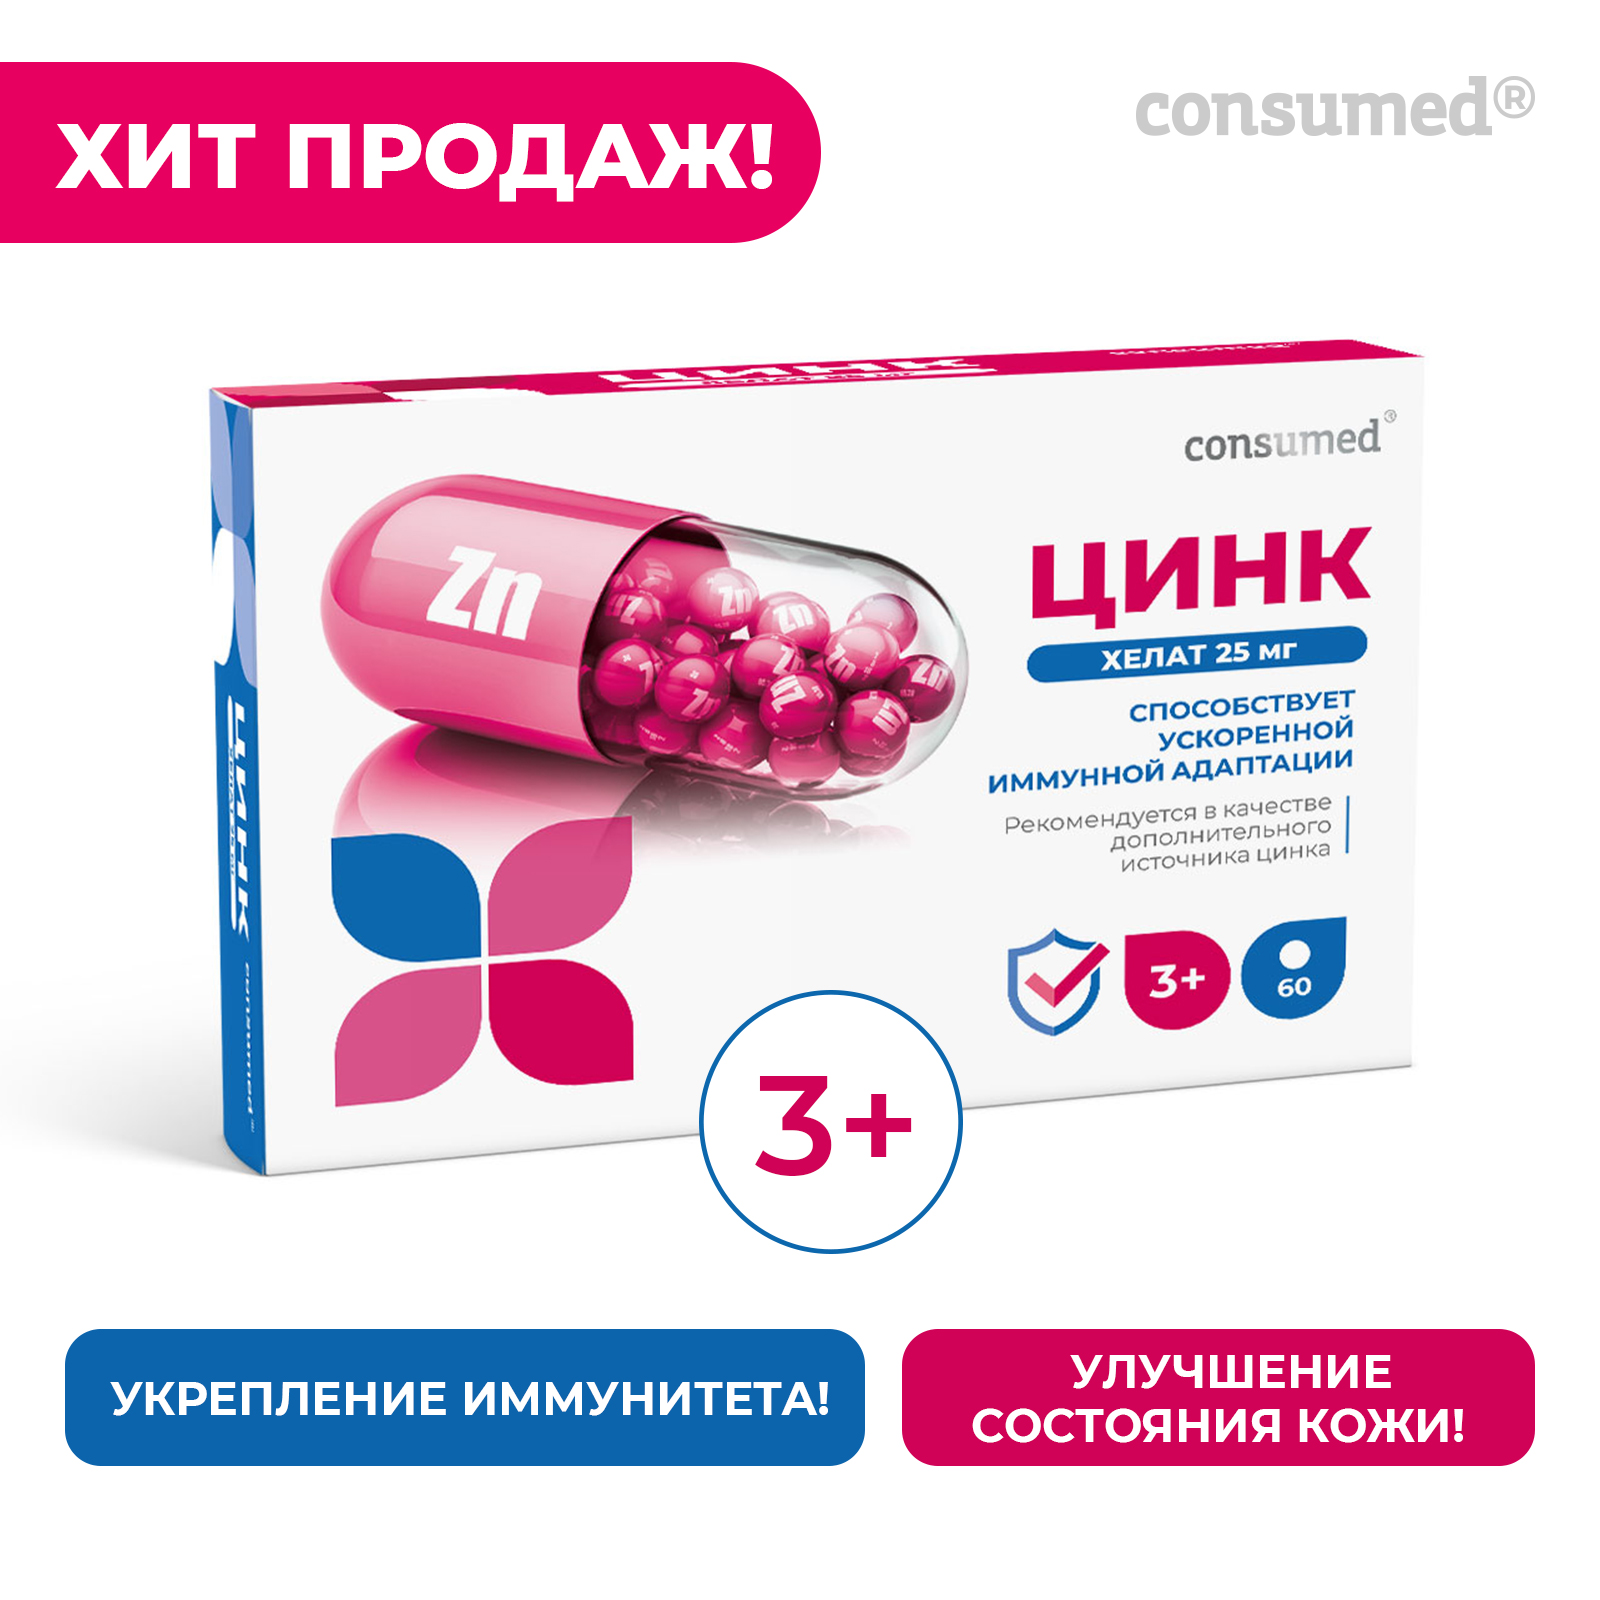 25 zn. Цинк consumed таблетки 50 БАД. Цинк Хелат Консумед. Цинк Хелат 25 мг consumed. Витамины для иммунитета детям от 3.